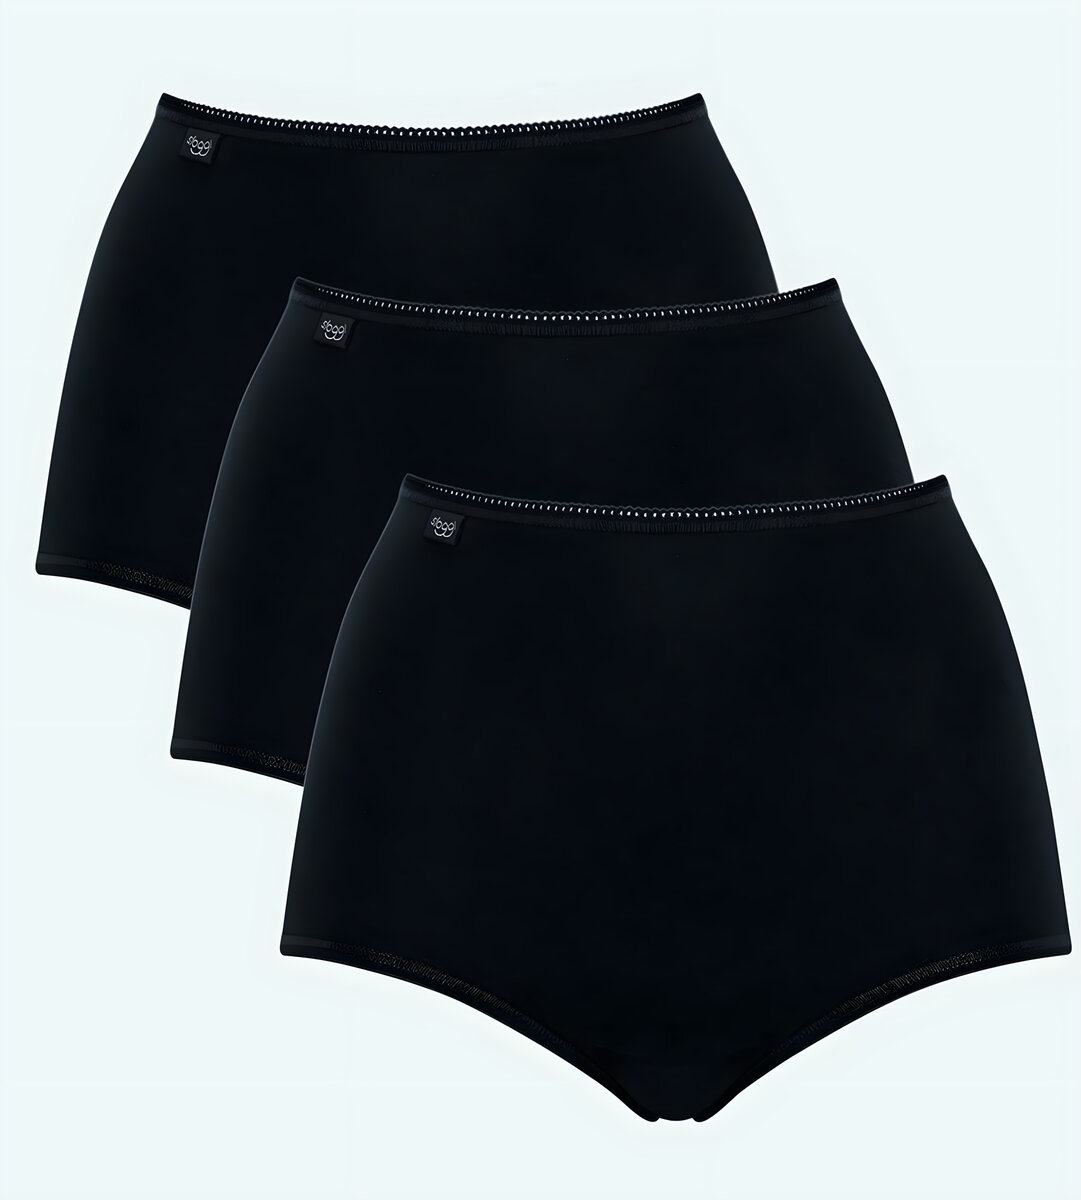 Dámské kalhoty Sloggi 7A1B35 Cotton Maxi C3P černé, BLACK 38 i343_10167190-0004-38